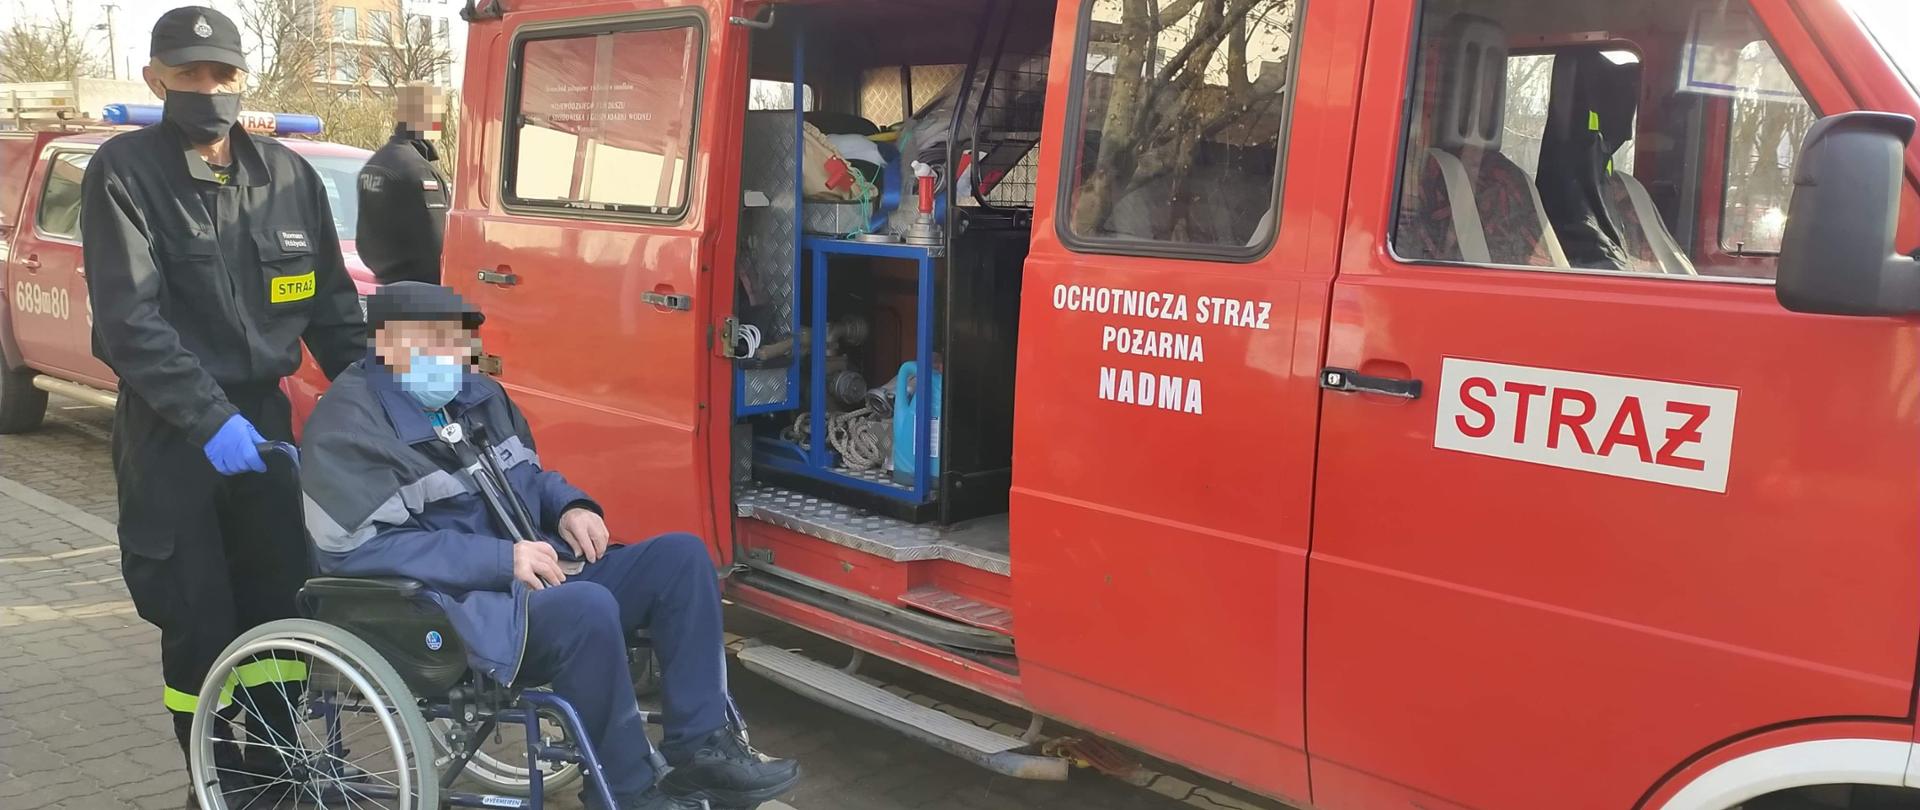 Na zdjęciu starszy mężczyzna na wózku inwalidzkim przed samochodem Ochotniczej Straży Pożarnej. Samochód typu bus czeka z otwartymi drzwiami. Wózek przytrzymywany jest przez strażaka w mundurze.